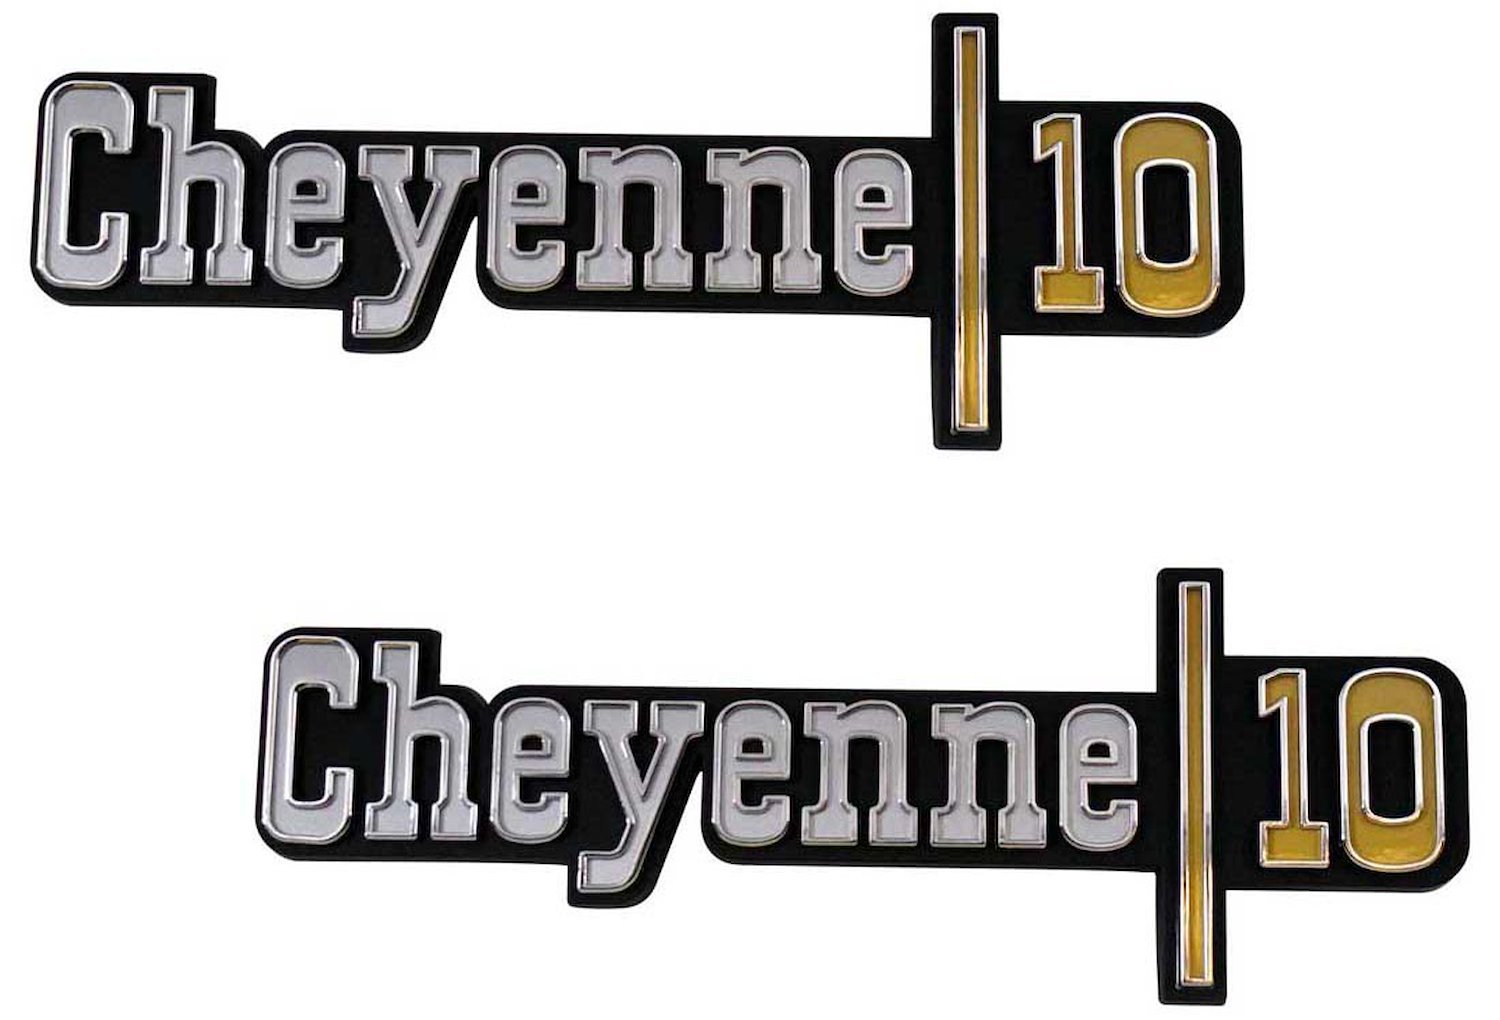 Front Fender Emblem Set 1973-1974 Chevy Cheyenne 1/2 Ton - "Cheyenne 10"